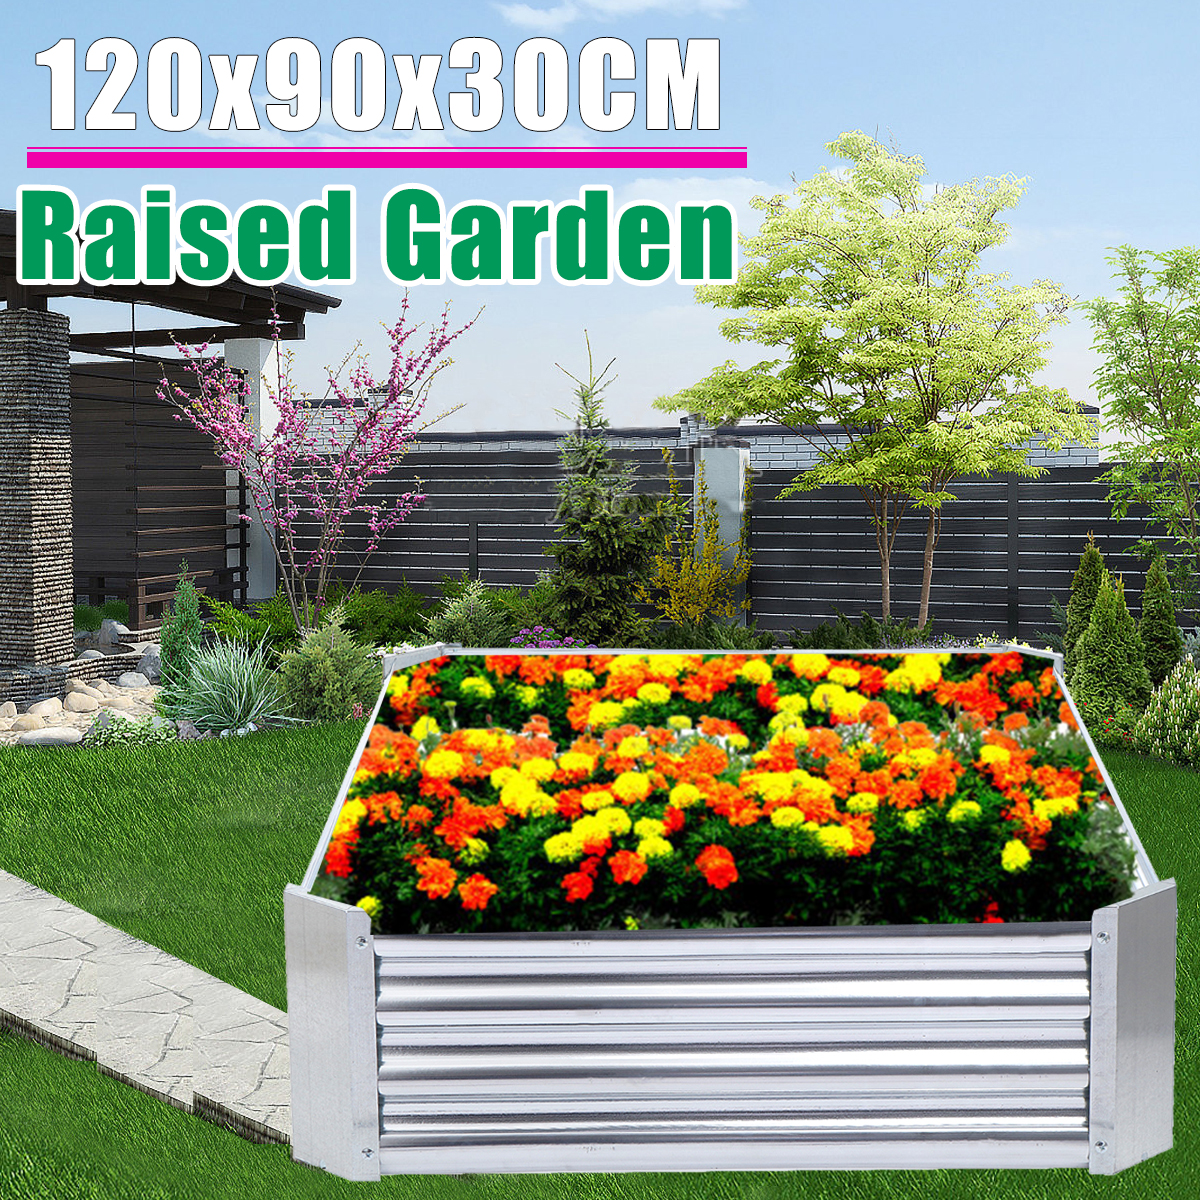 Galvanized-Sheet-Raised-Garden-Bed-Vegetables-Plant-Flower-Pot-1698713